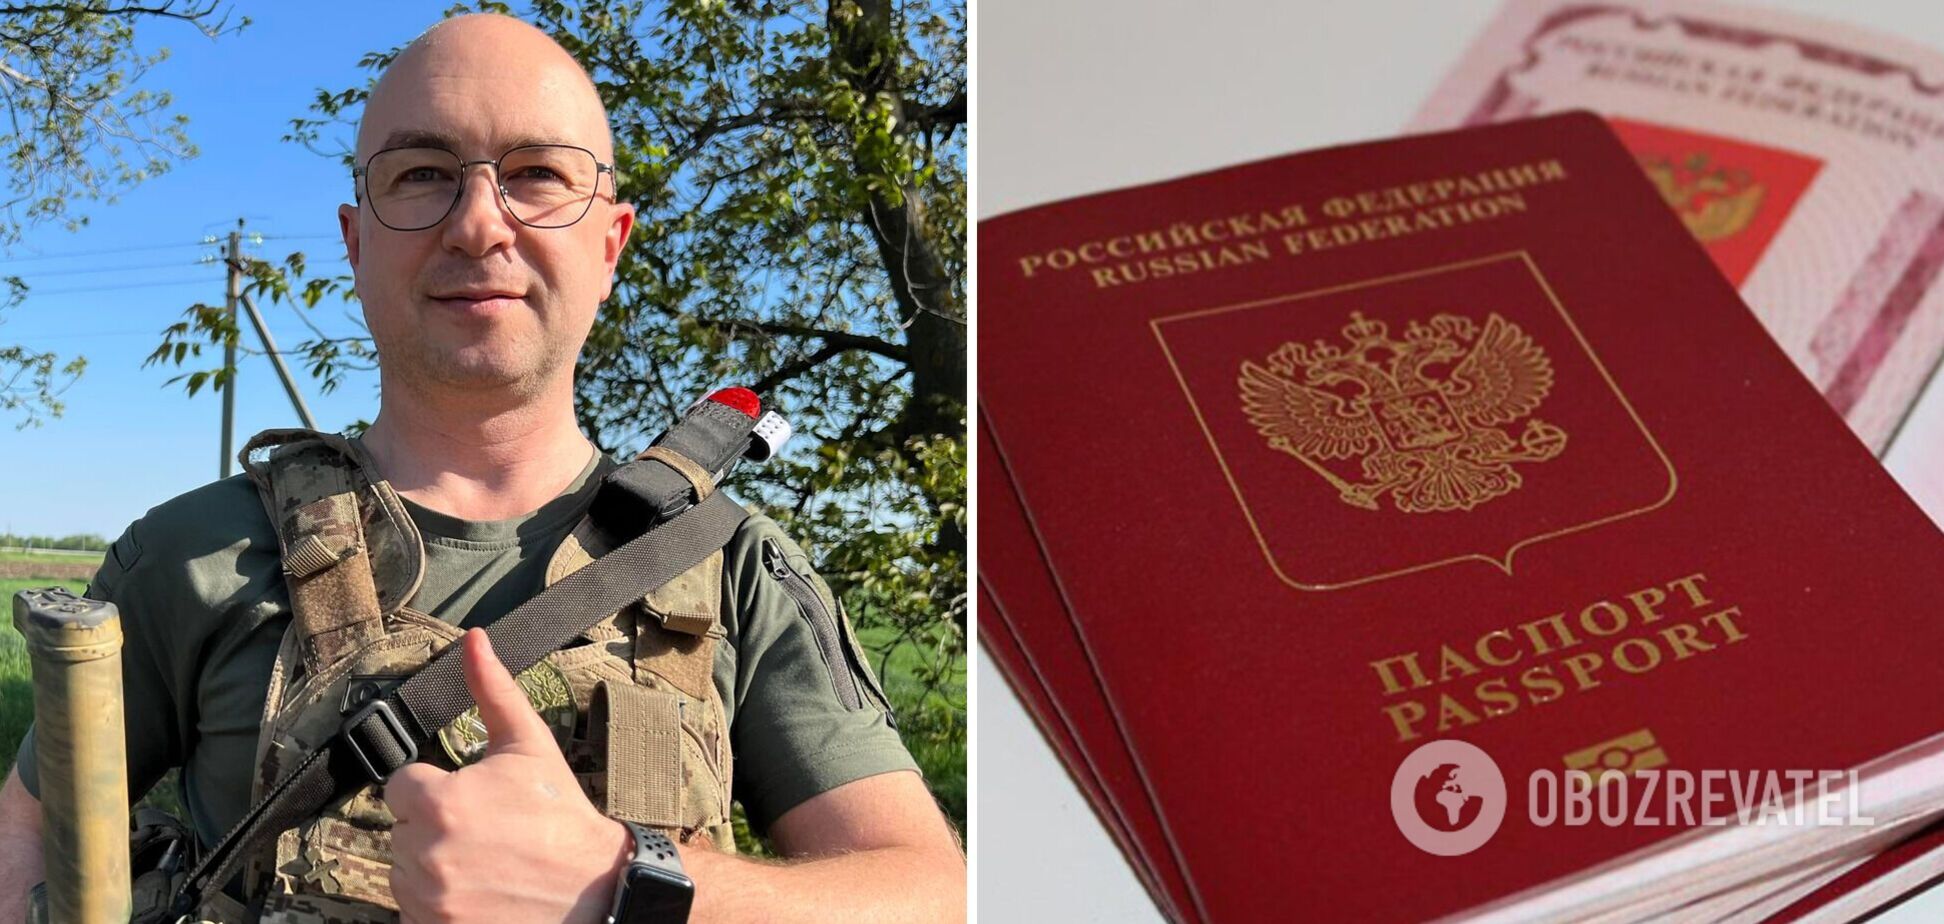 У топ-чиновника Минобороны обнаружили паспорт РФ: он уже назвал его фейковым и указал, в чем подделка. Фото и видео